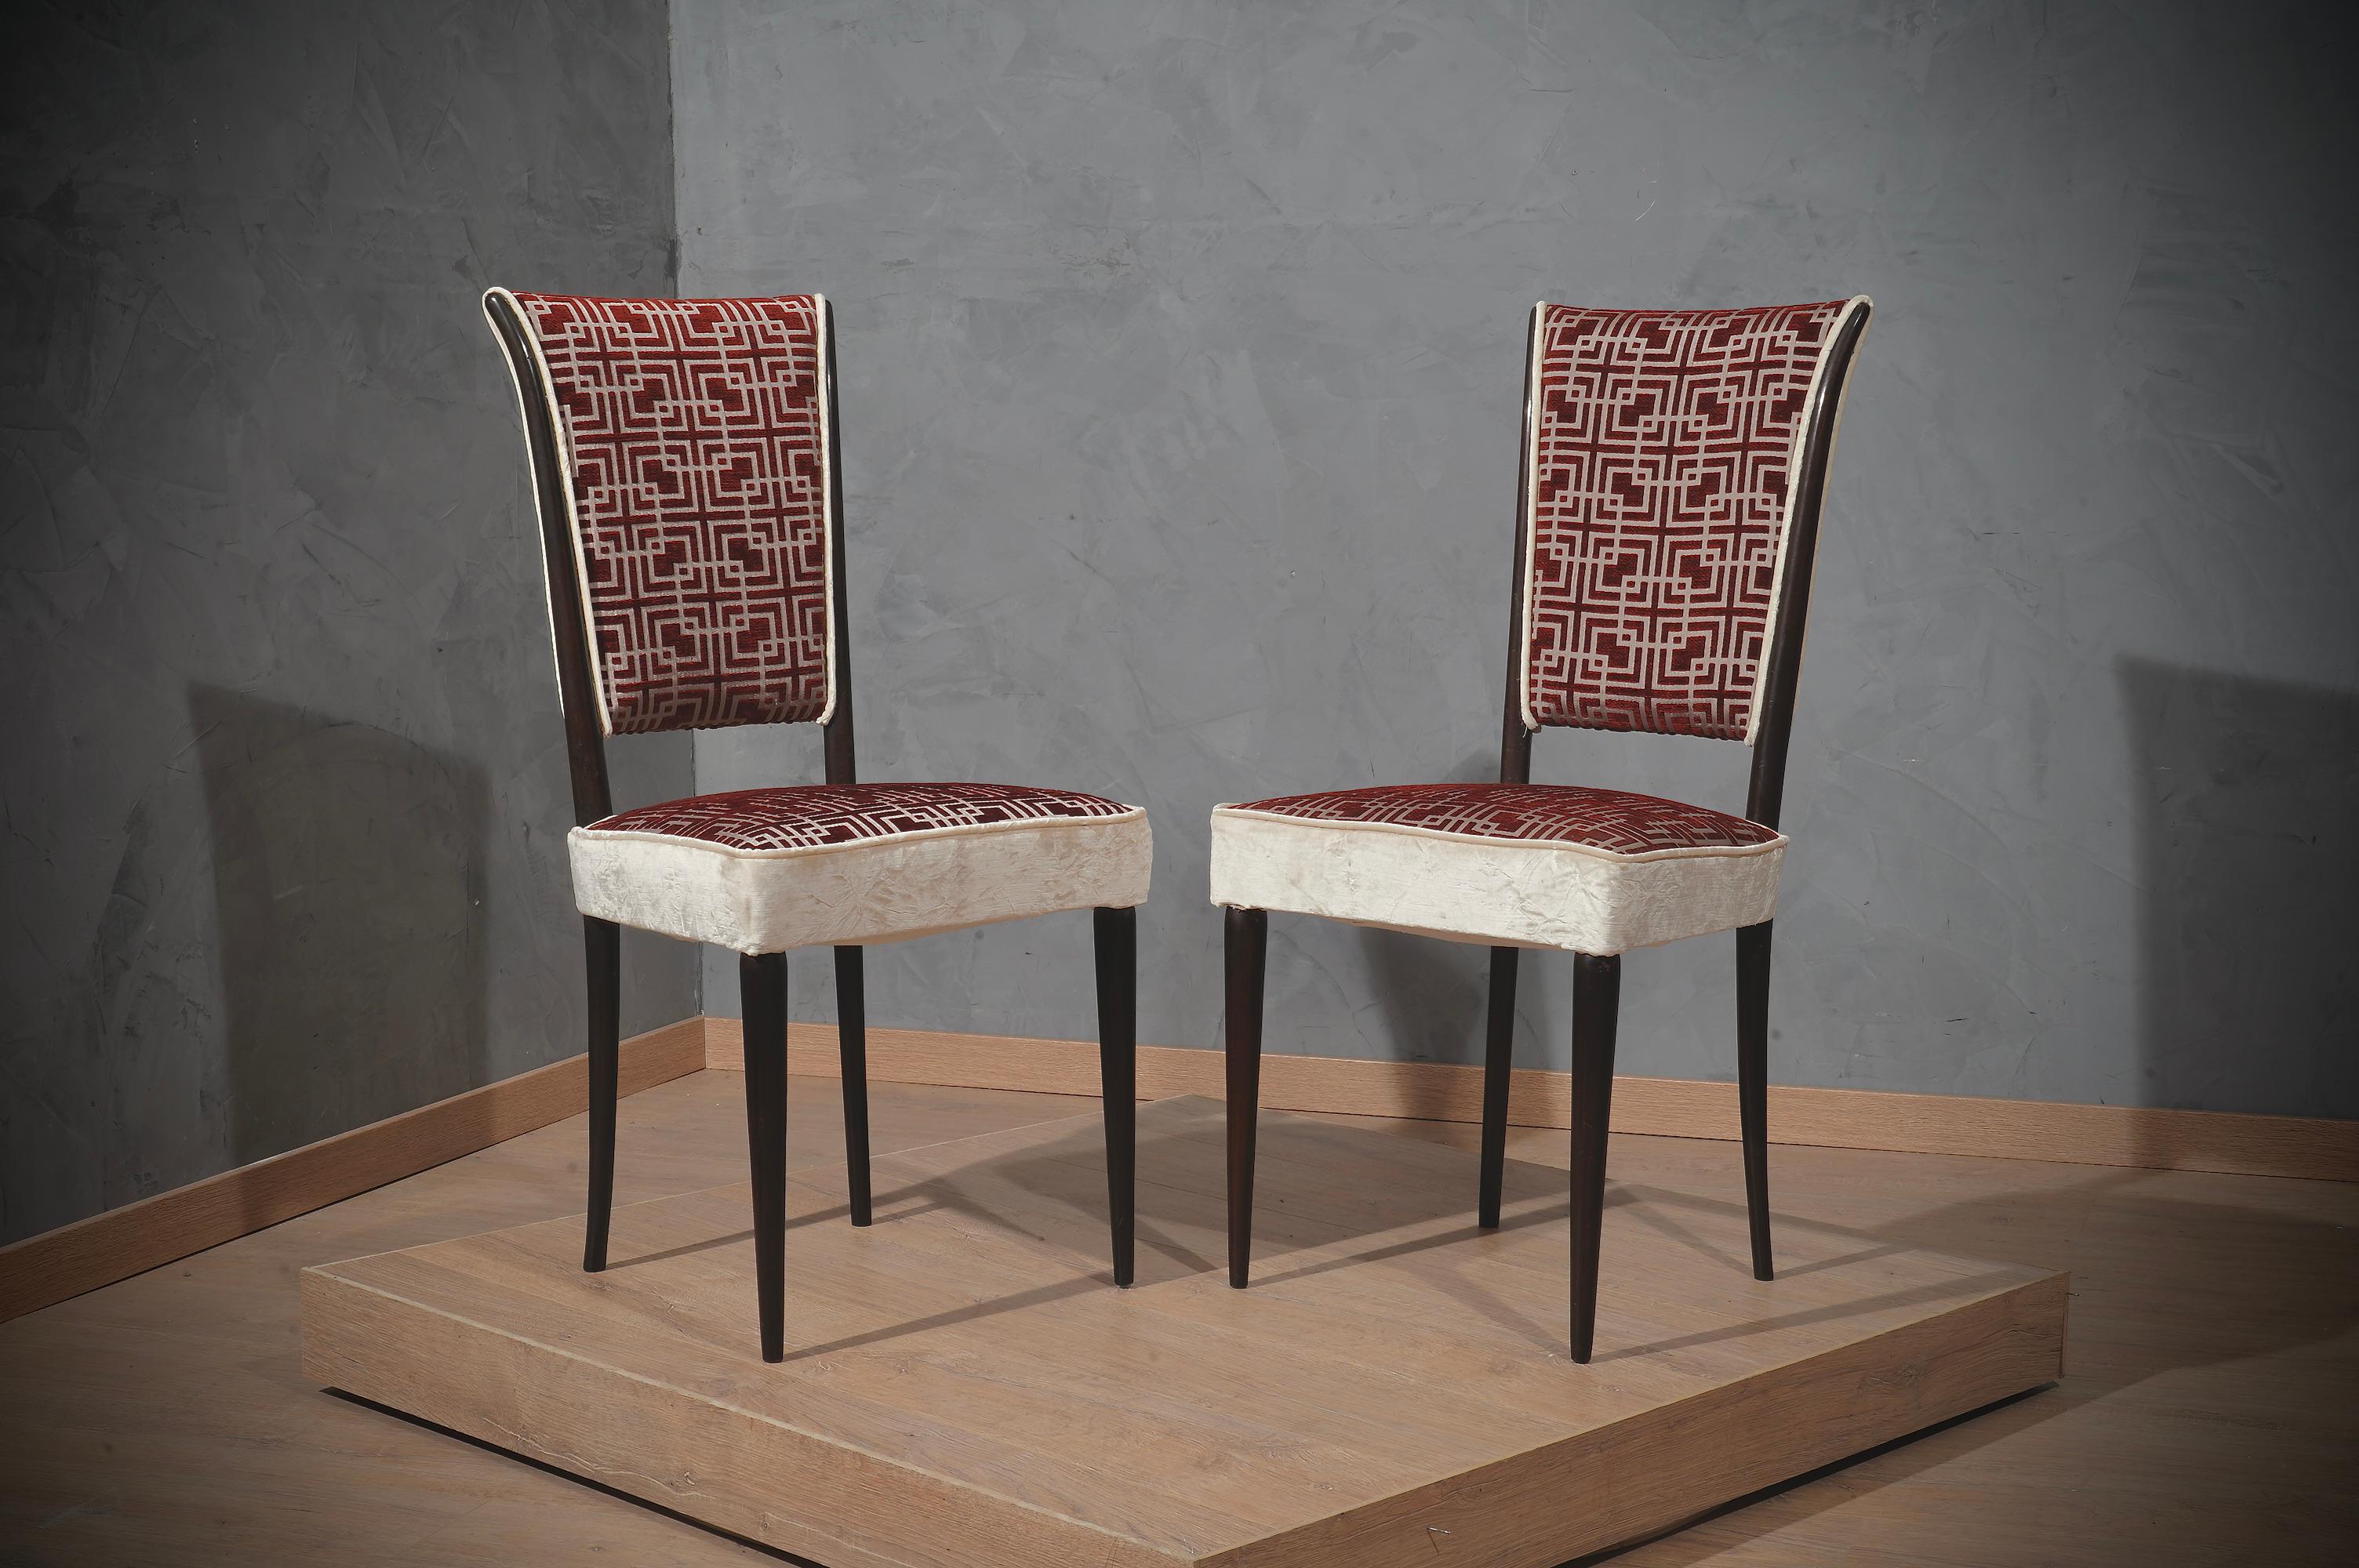 Schöne Stühle im charakteristischen italienischen Stil von Osvaldo Borsani. Rückenlehne des Stuhls mit einem sehr schönen Design und sehr reich Stoff.

Die Stühle haben eine Holzstruktur und sind mit dunklem Schellack gut poliert worden. Vor allem